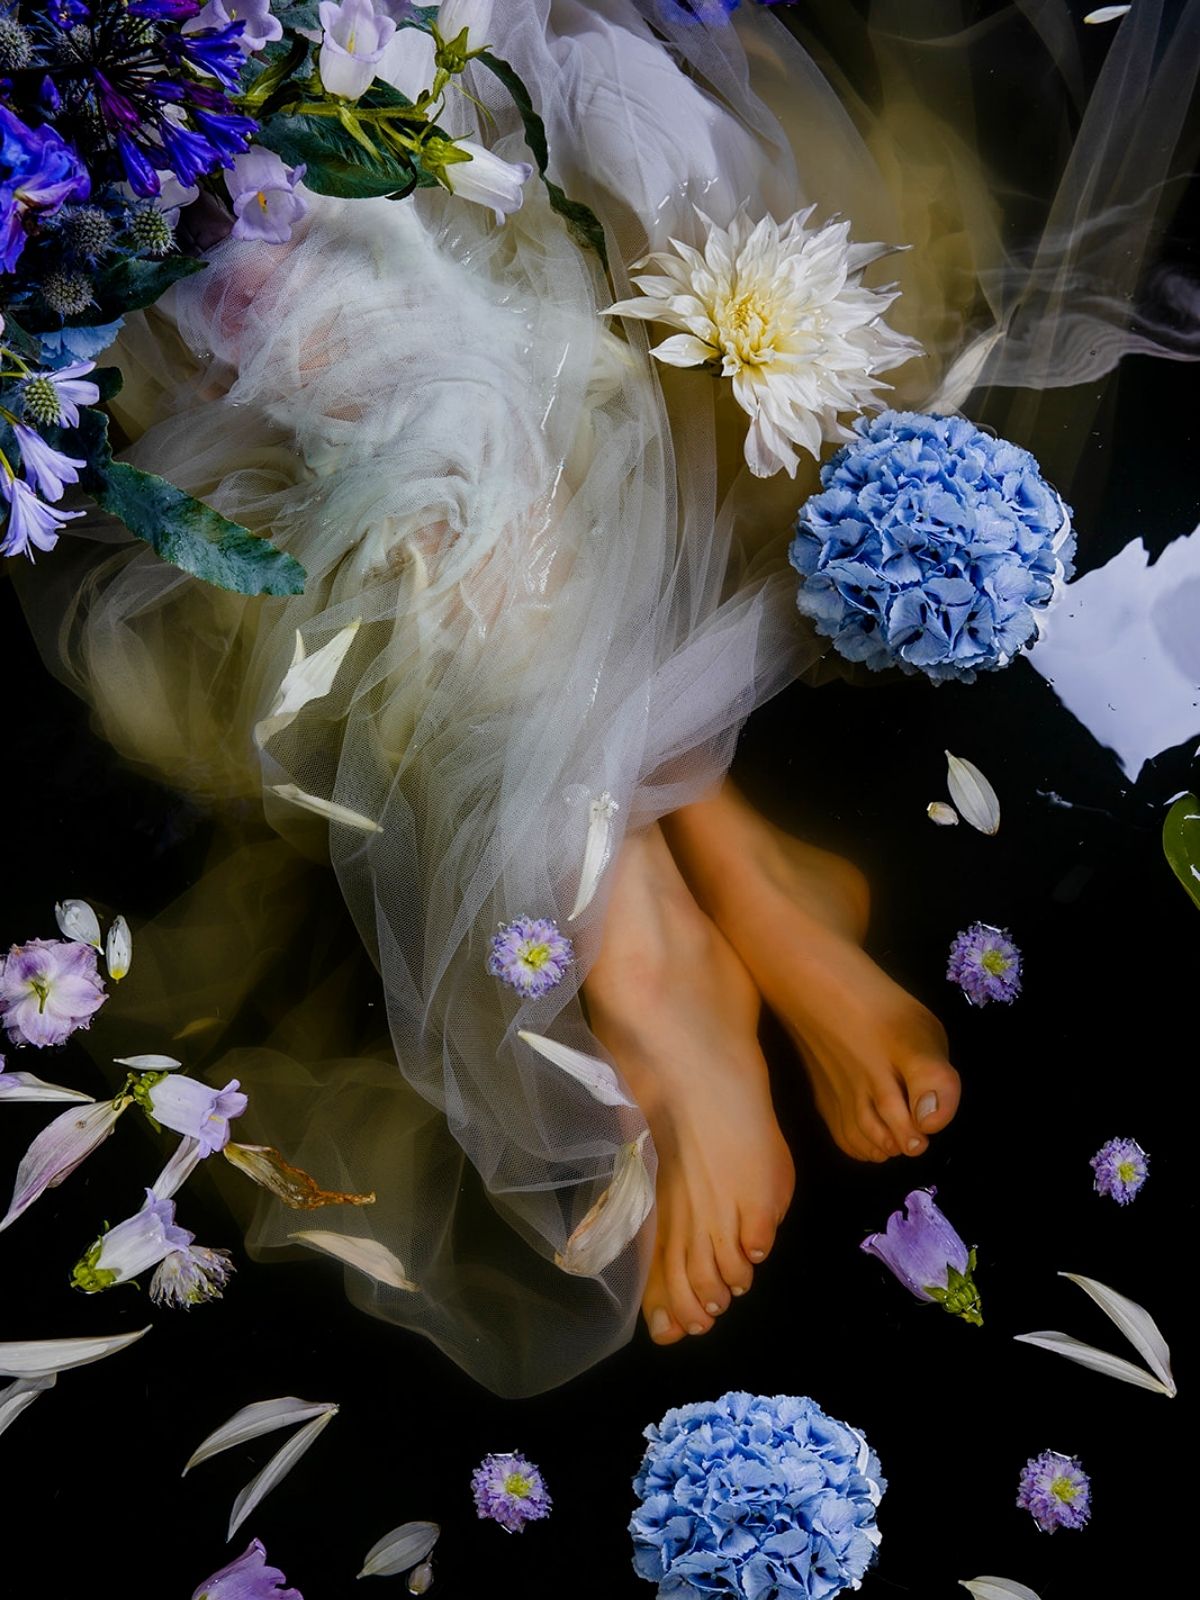 Ophelia - Josefien Goethals on Thursd - Blue Hydrangea floating  in water